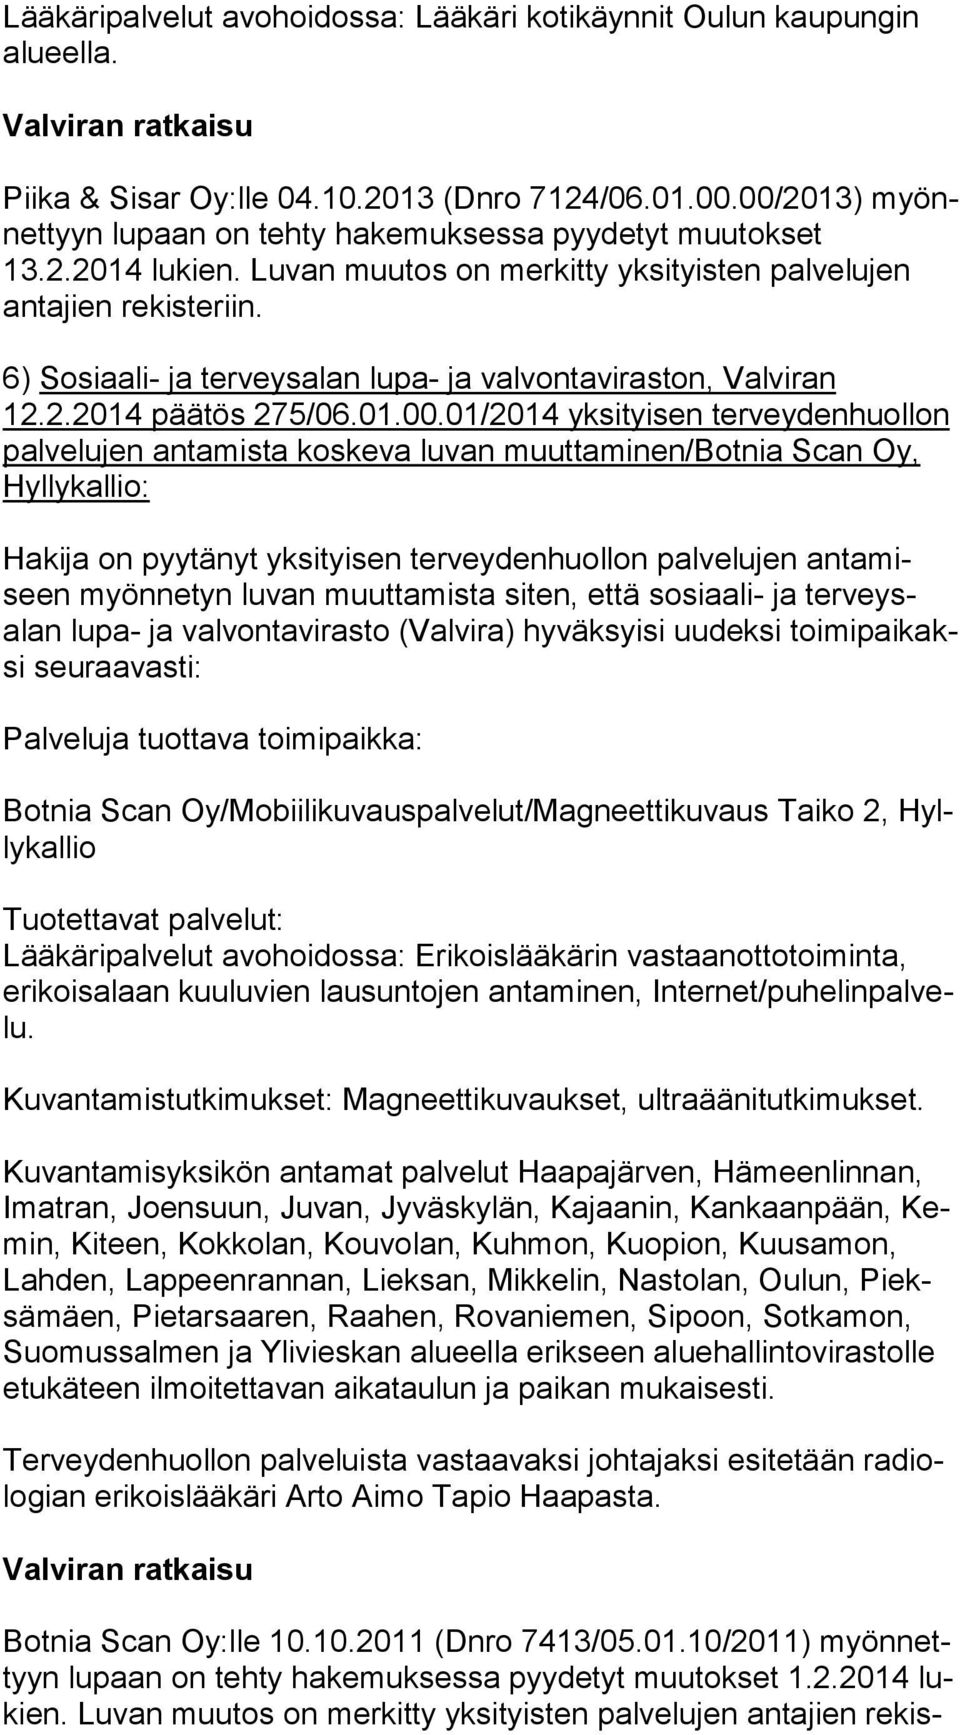 6) Sosiaali- ja terveysalan lupa- ja valvontaviraston, Valviran 12.2.2014 päätös 275/06.01.00.